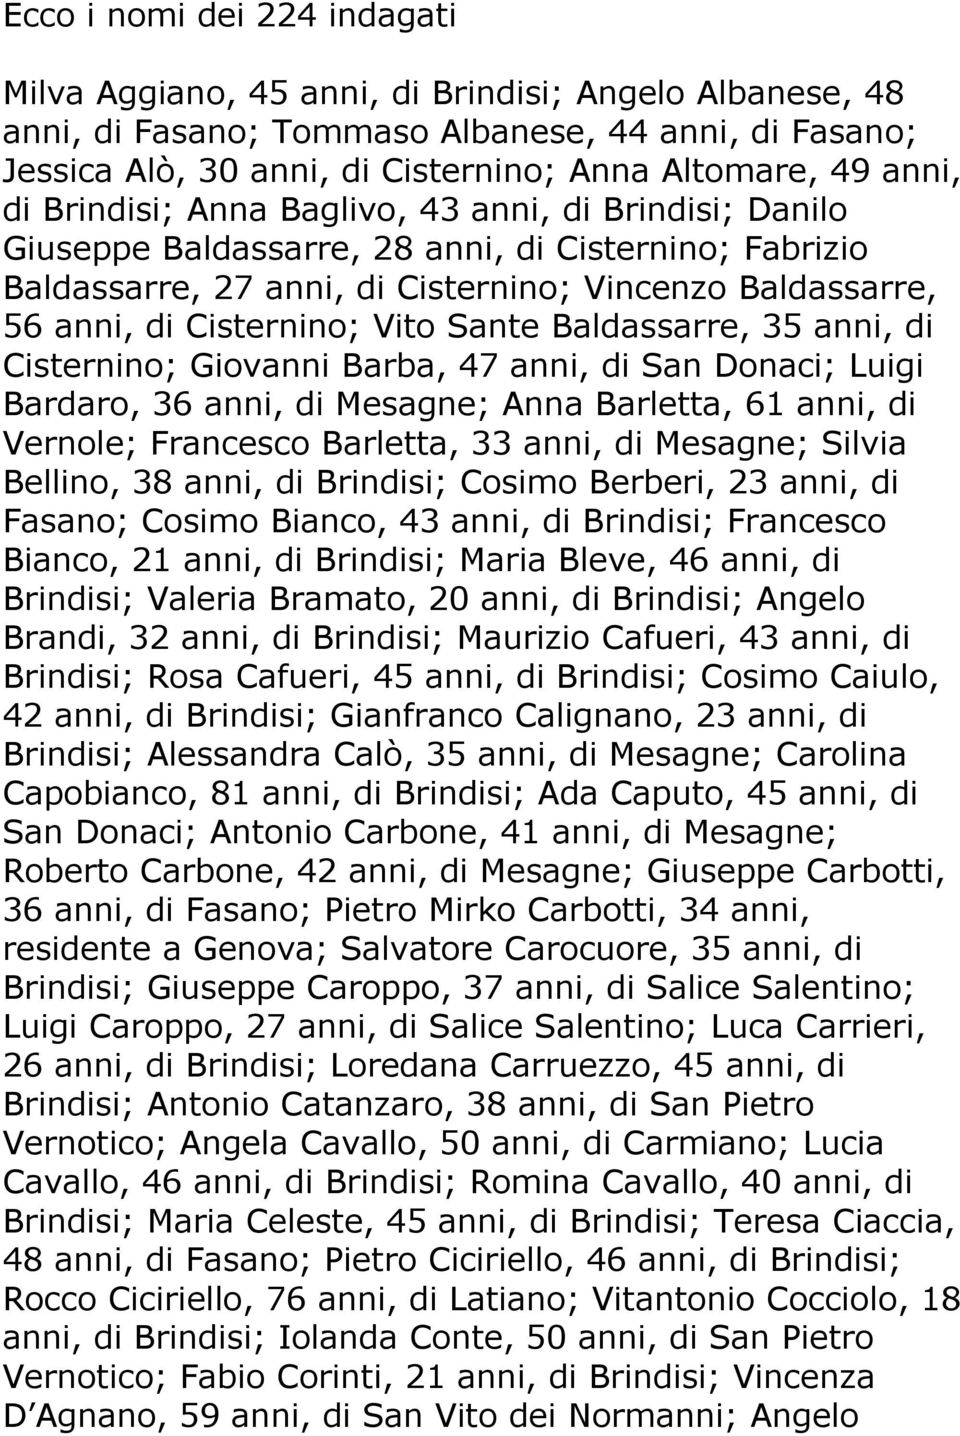 Vito Sante Baldassarre, 35 anni, di Cisternino; Giovanni Barba, 47 anni, di San Donaci; Luigi Bardaro, 36 anni, di Mesagne; Anna Barletta, 61 anni, di Vernole; Francesco Barletta, 33 anni, di